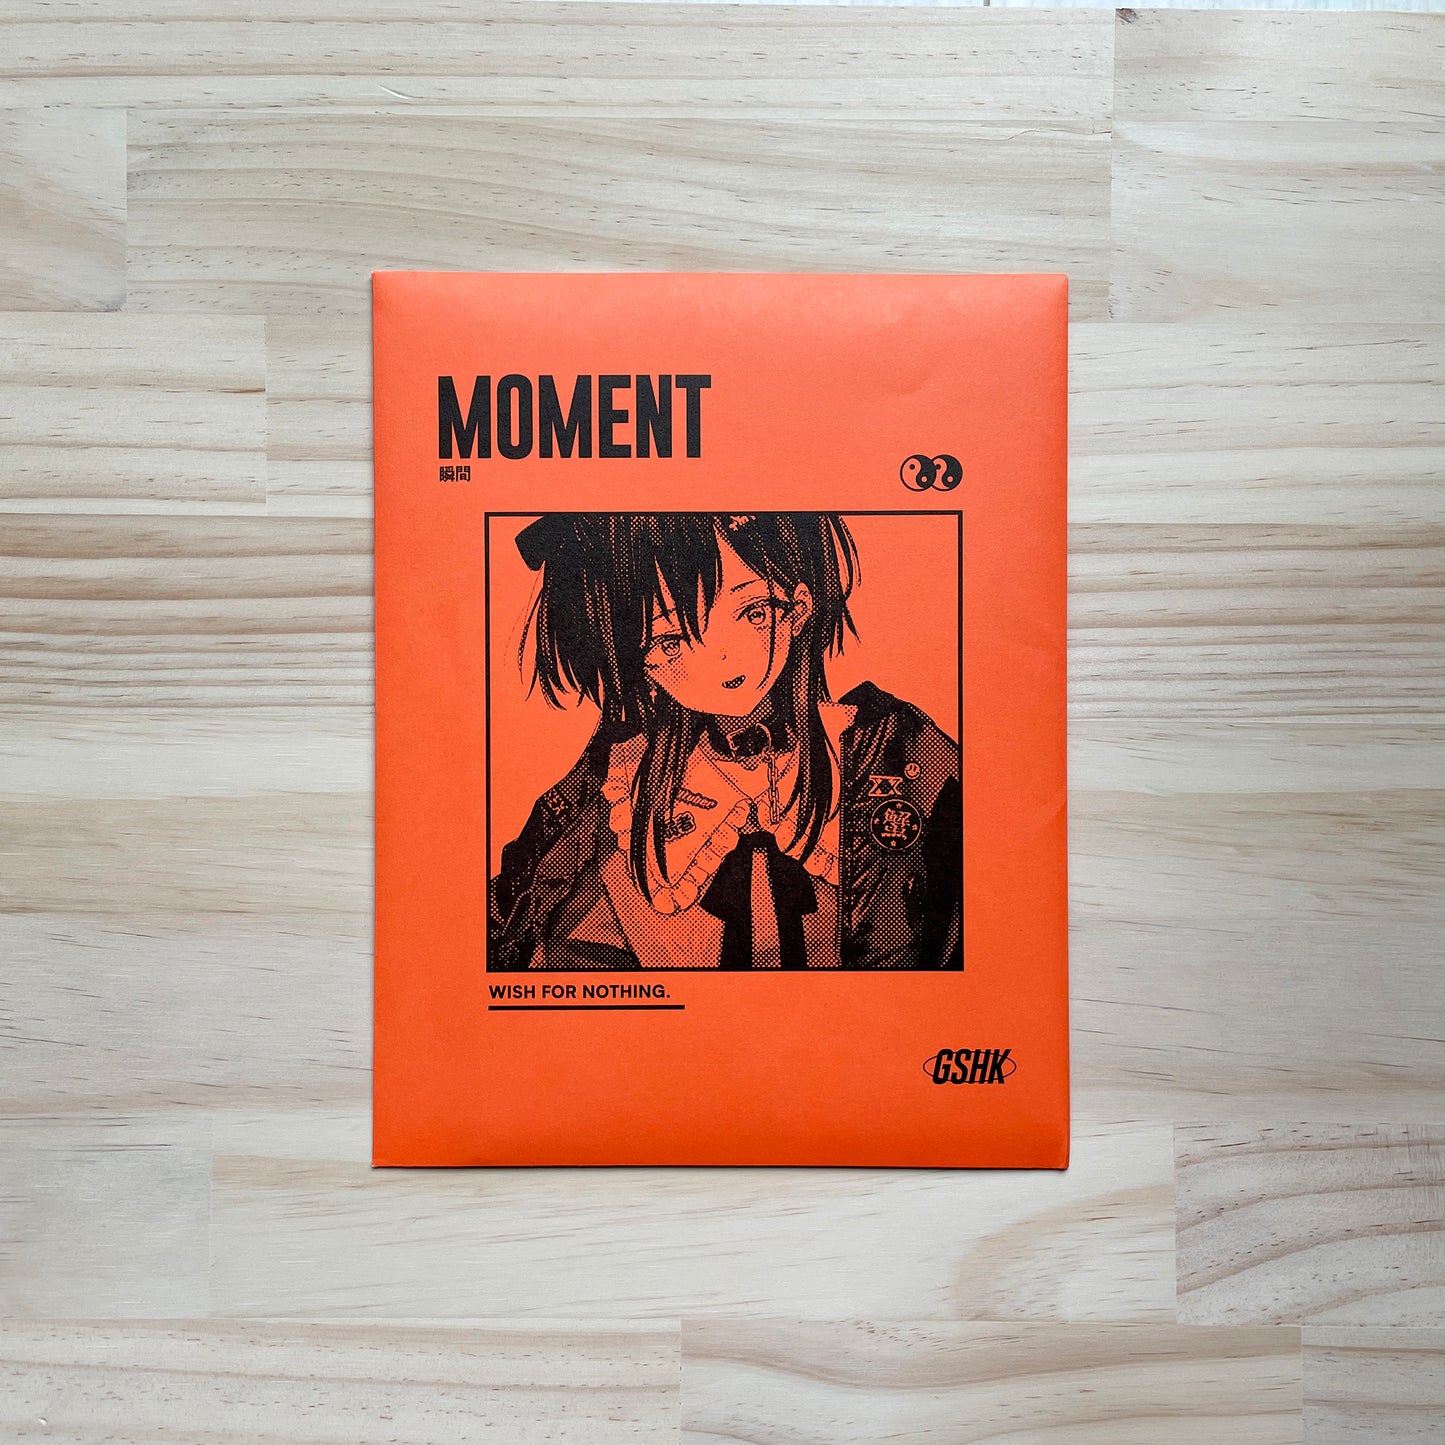 ART BOOK "MOMENT"